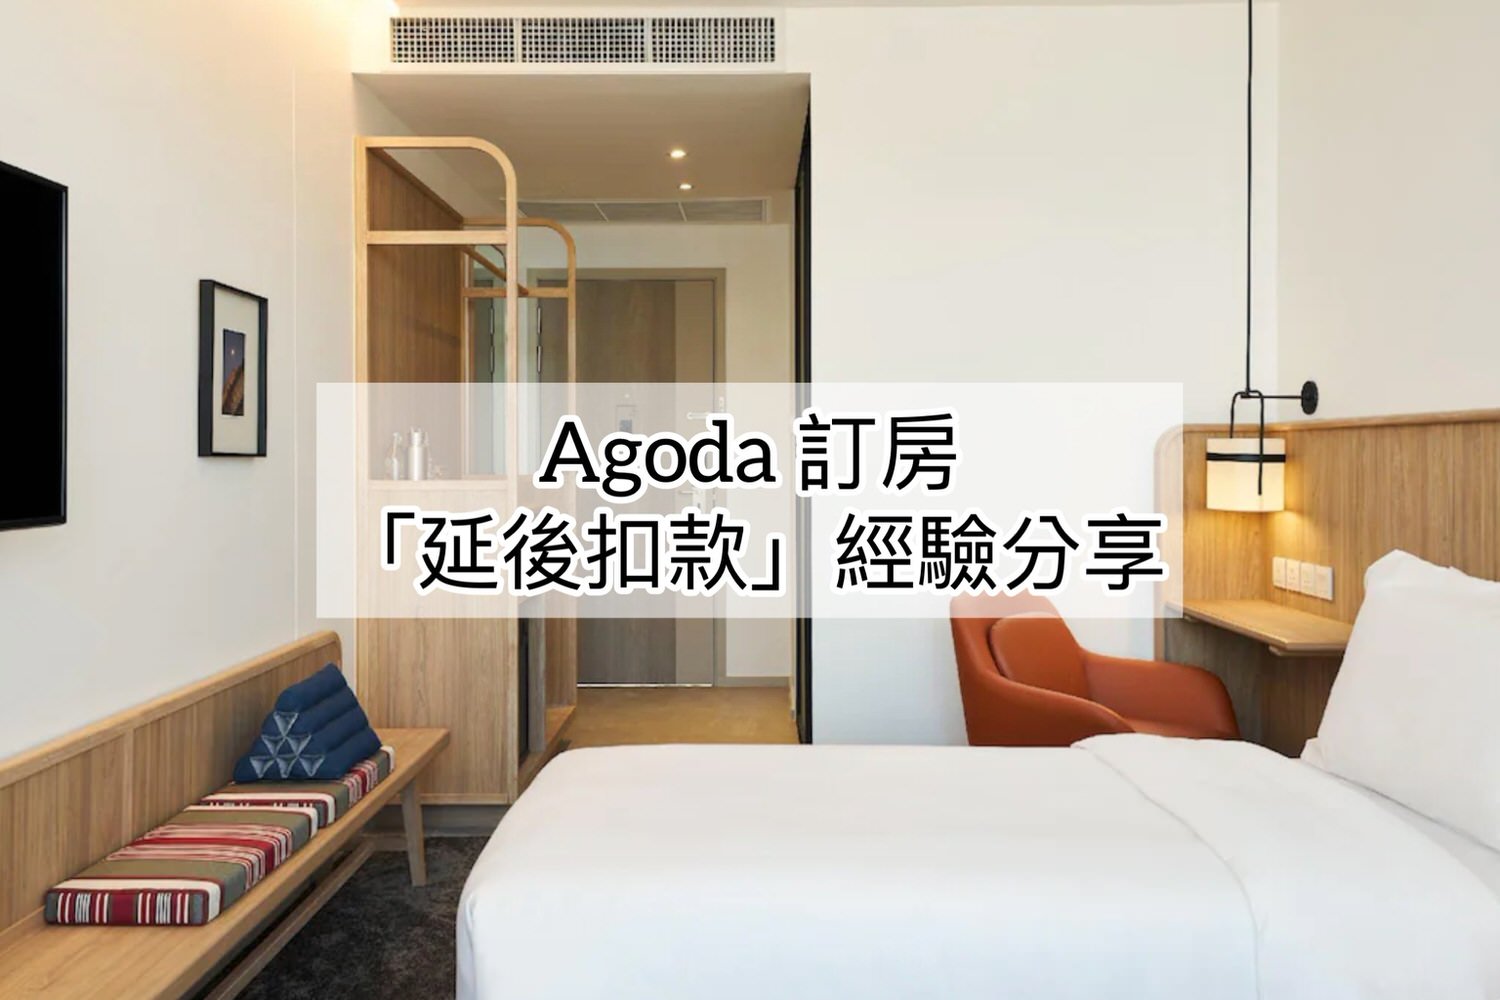 Agoda訂房「延後扣款」價格比較貴或便宜？曼谷訂房經驗分享